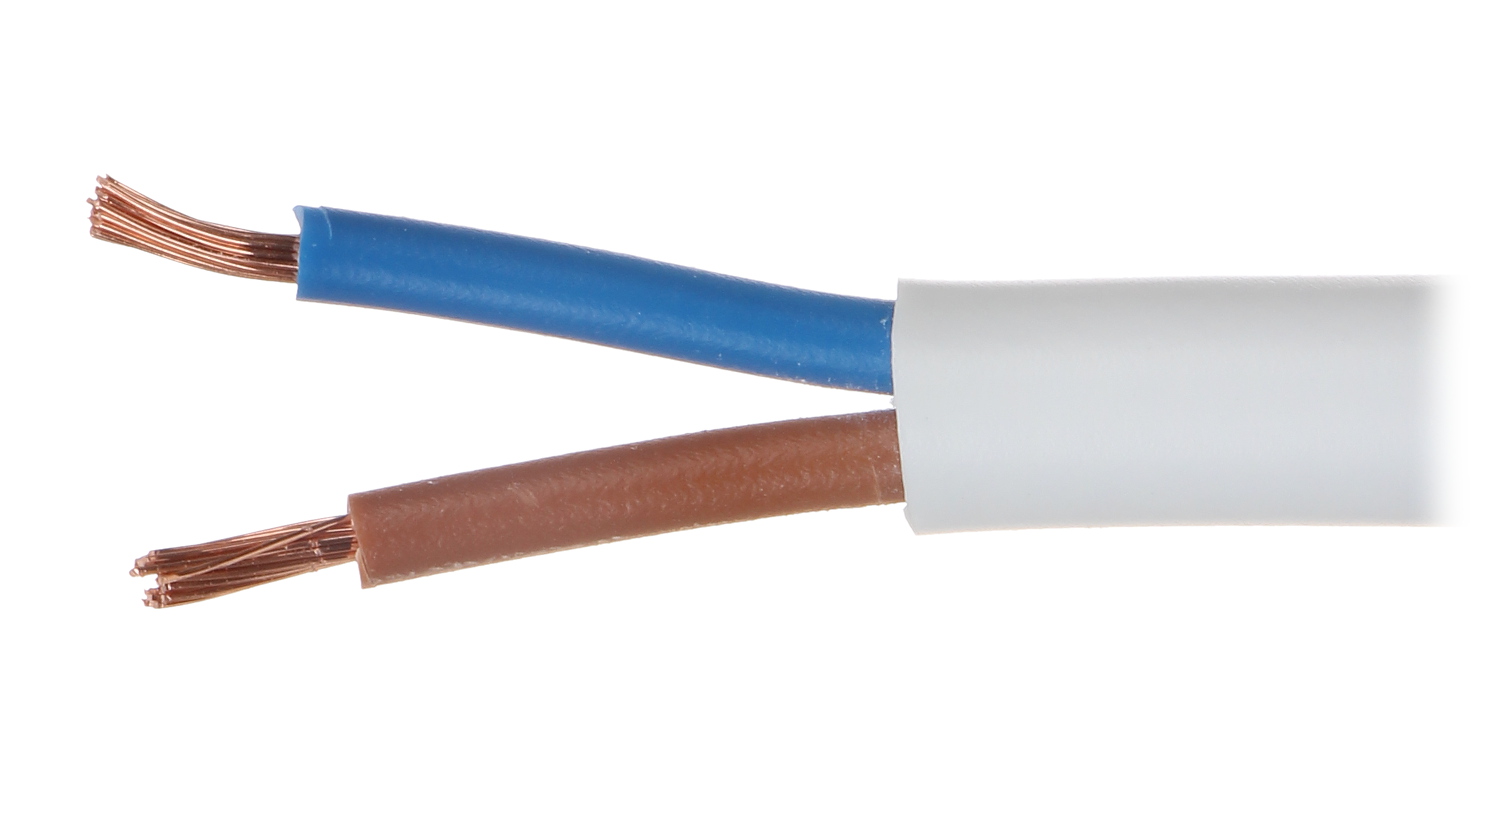 Купить кабель в калининграде. Lapp Kabel h05vv-f 2х0.75. H05vv-f 2x1. H03vv-f 2х0.75 flexible Cable. Lapp кабель 2 0.75.